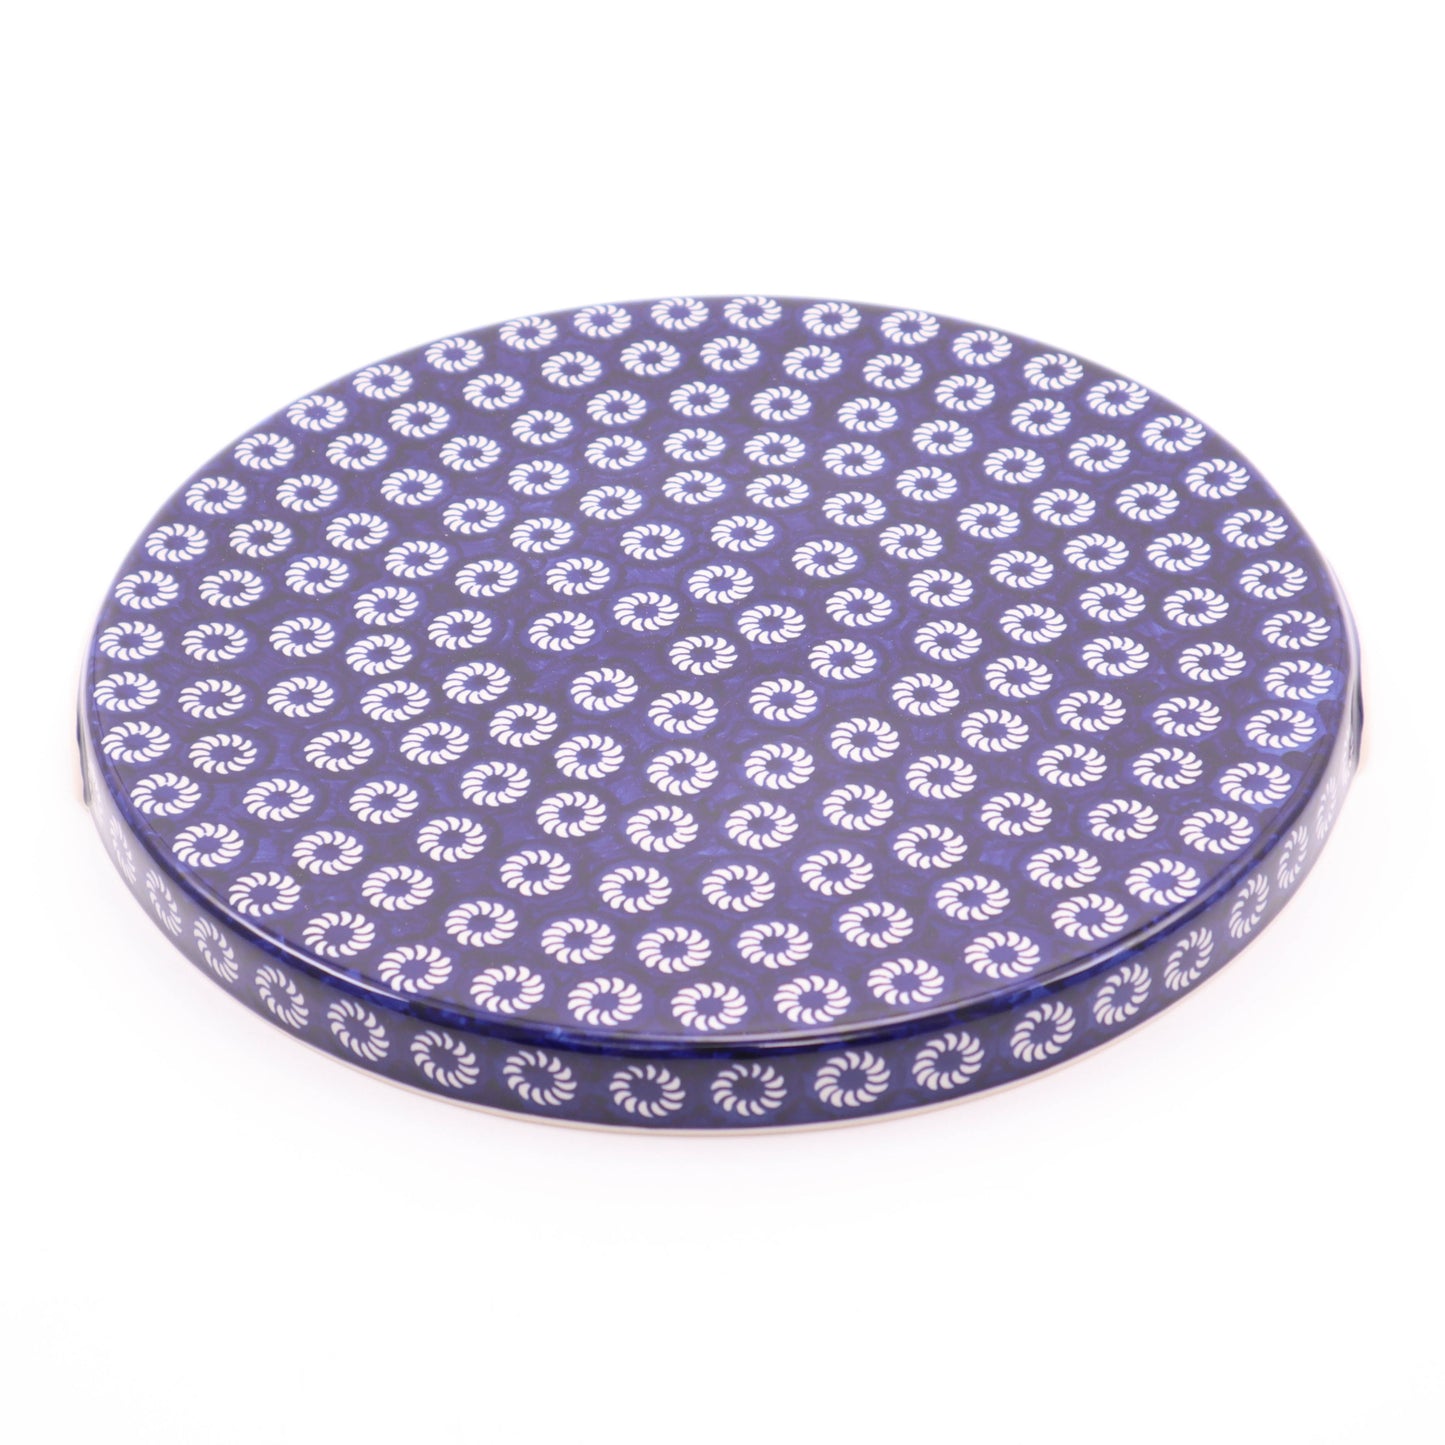 12.5" Cake Plate. Pattern: Pinwheels